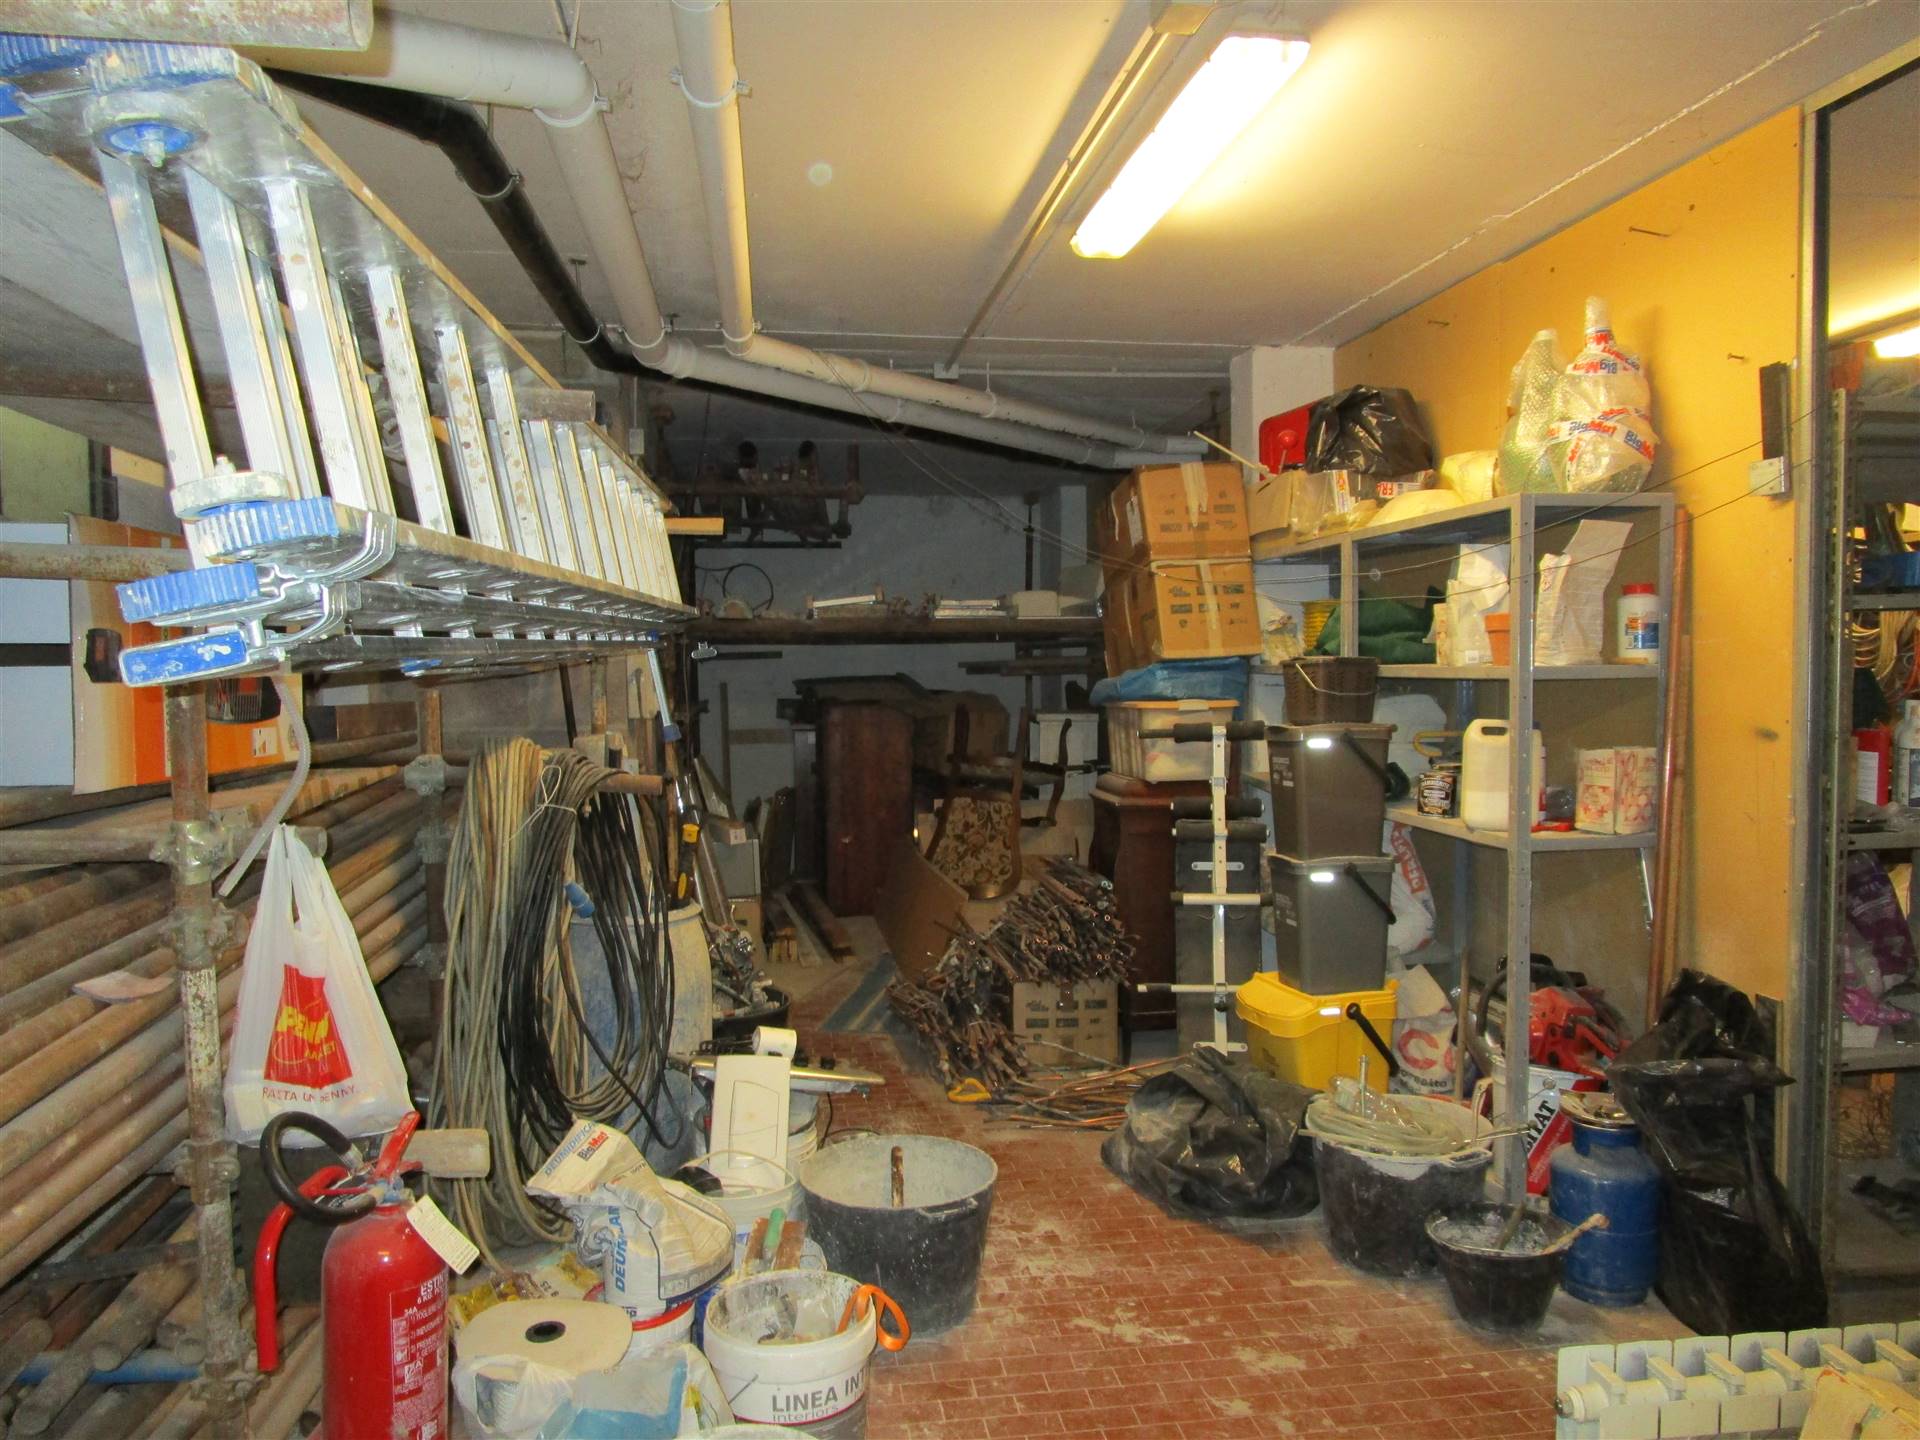 Garage in Vendita a Campi bisenzio zona San donnino - immagine 3